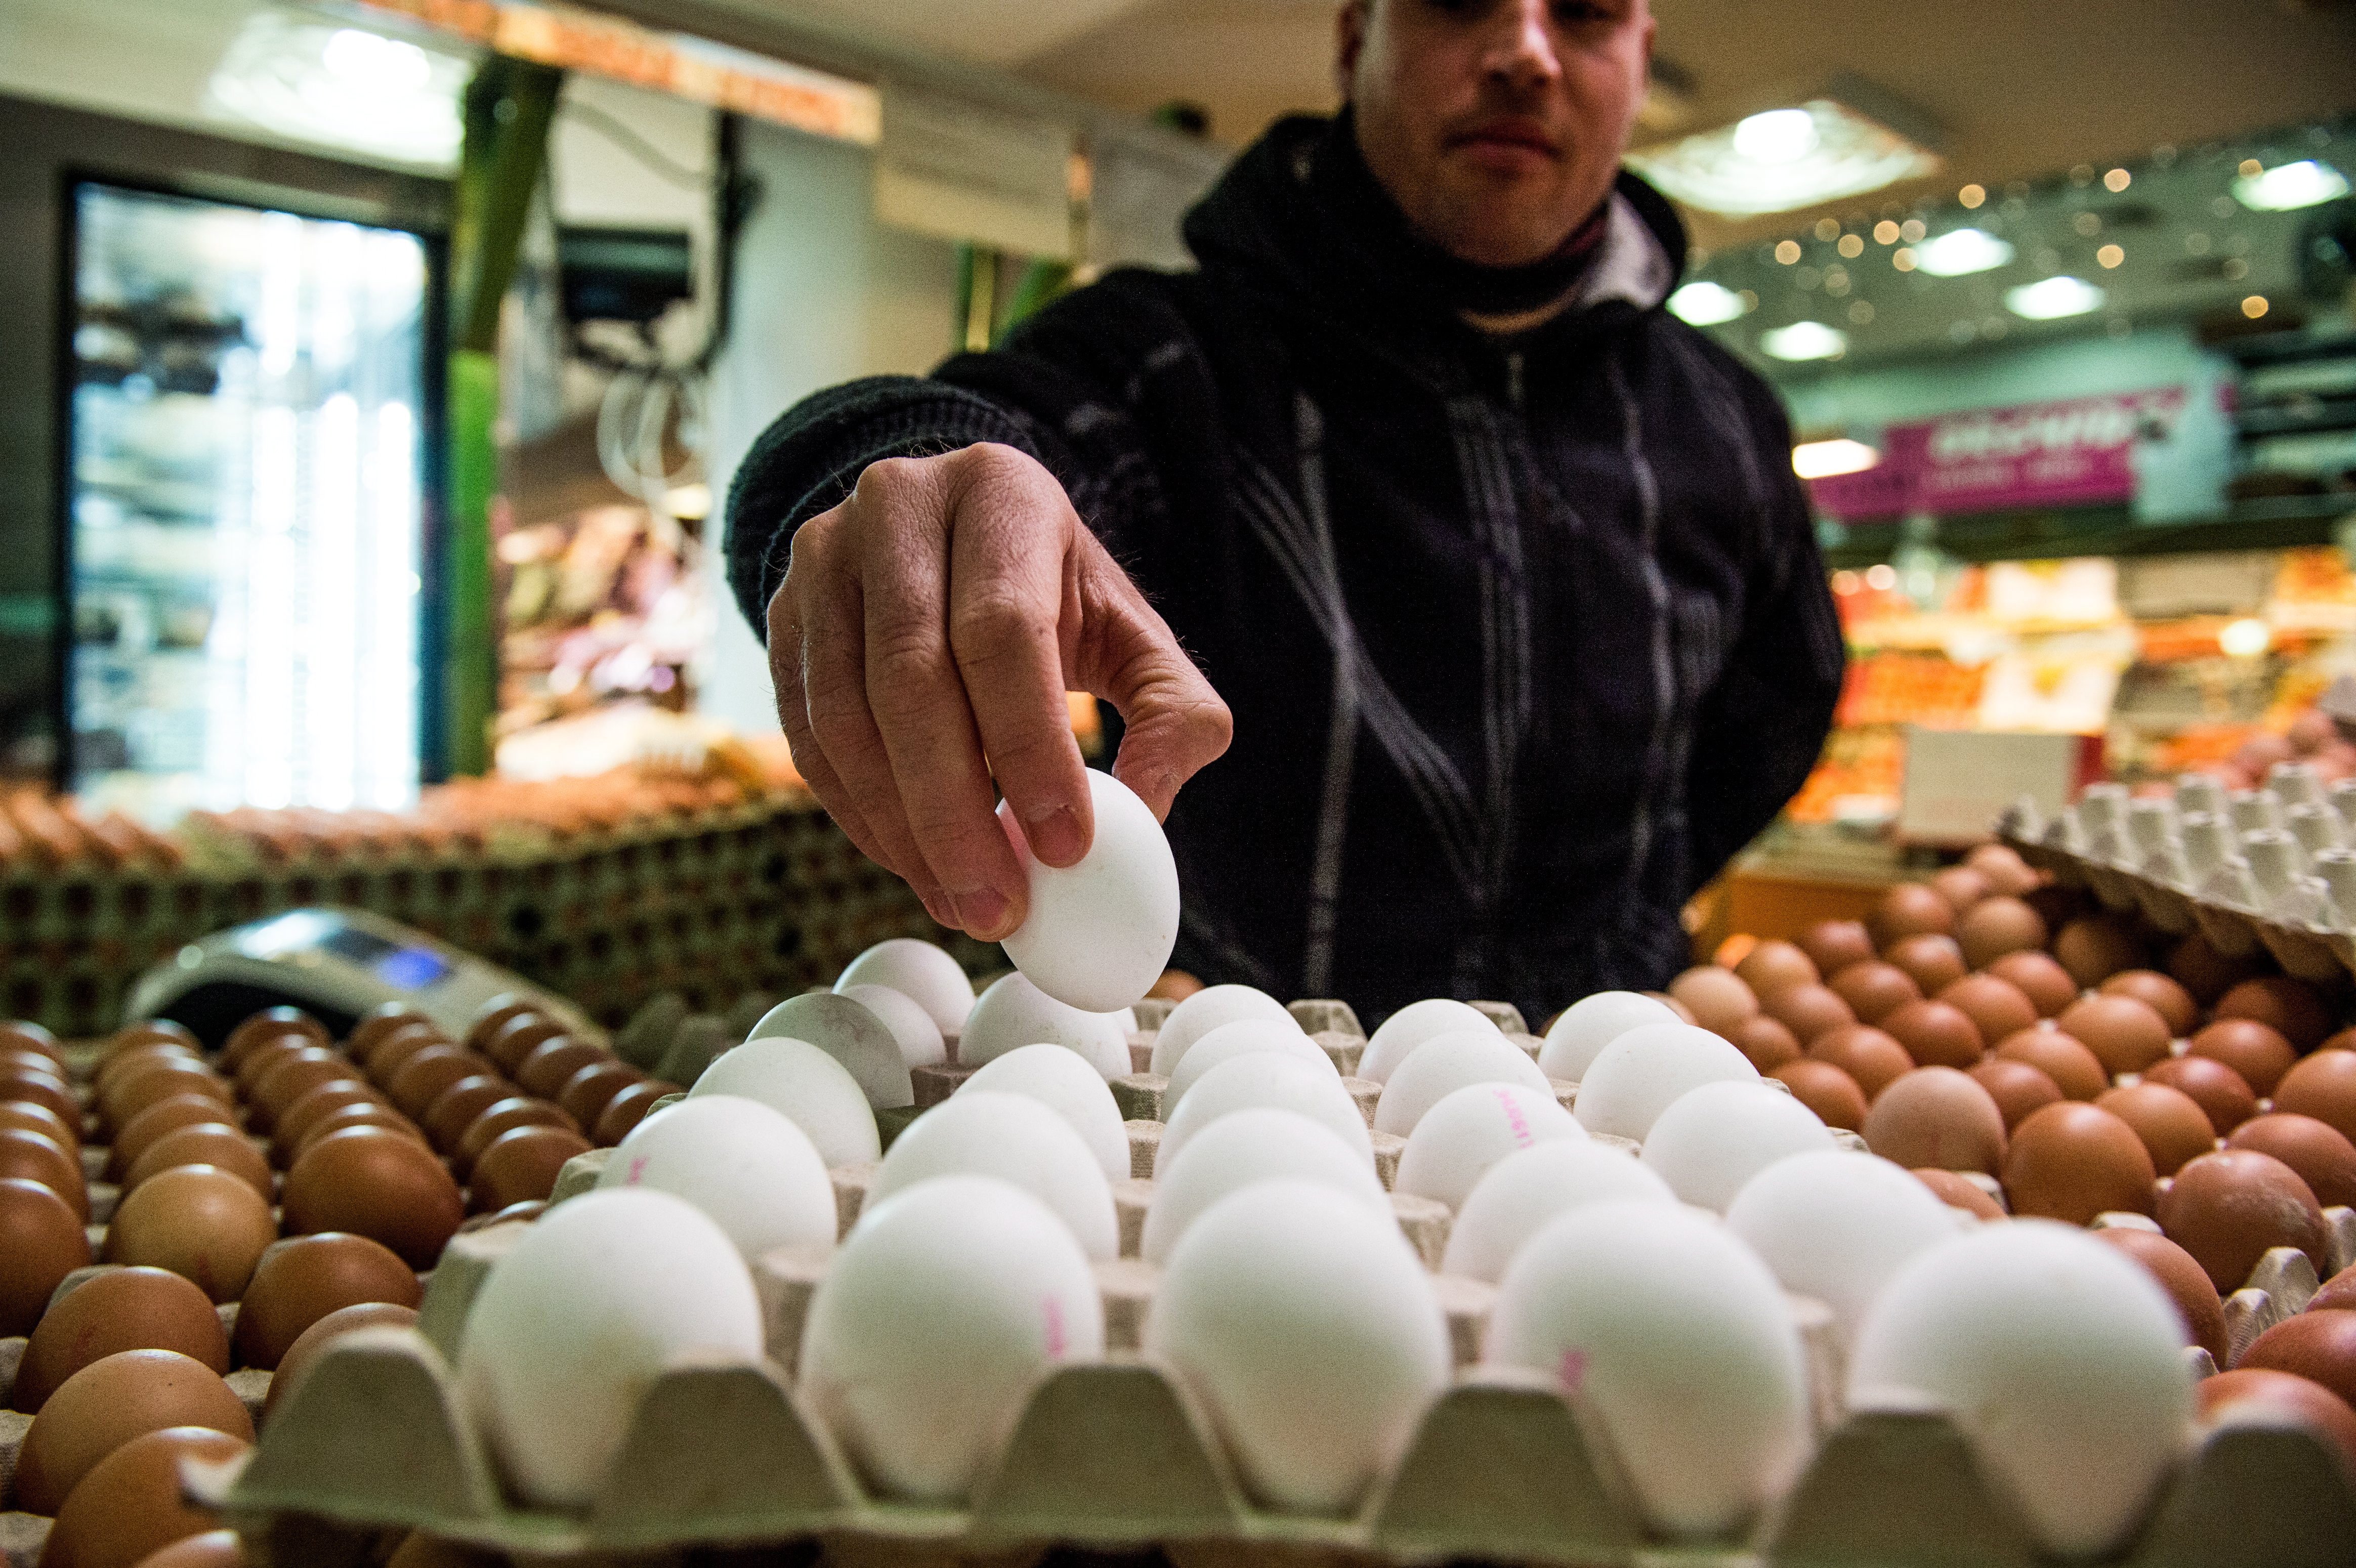 Sok százezer rovarirtóval szennyezett tojás lephette el Európát